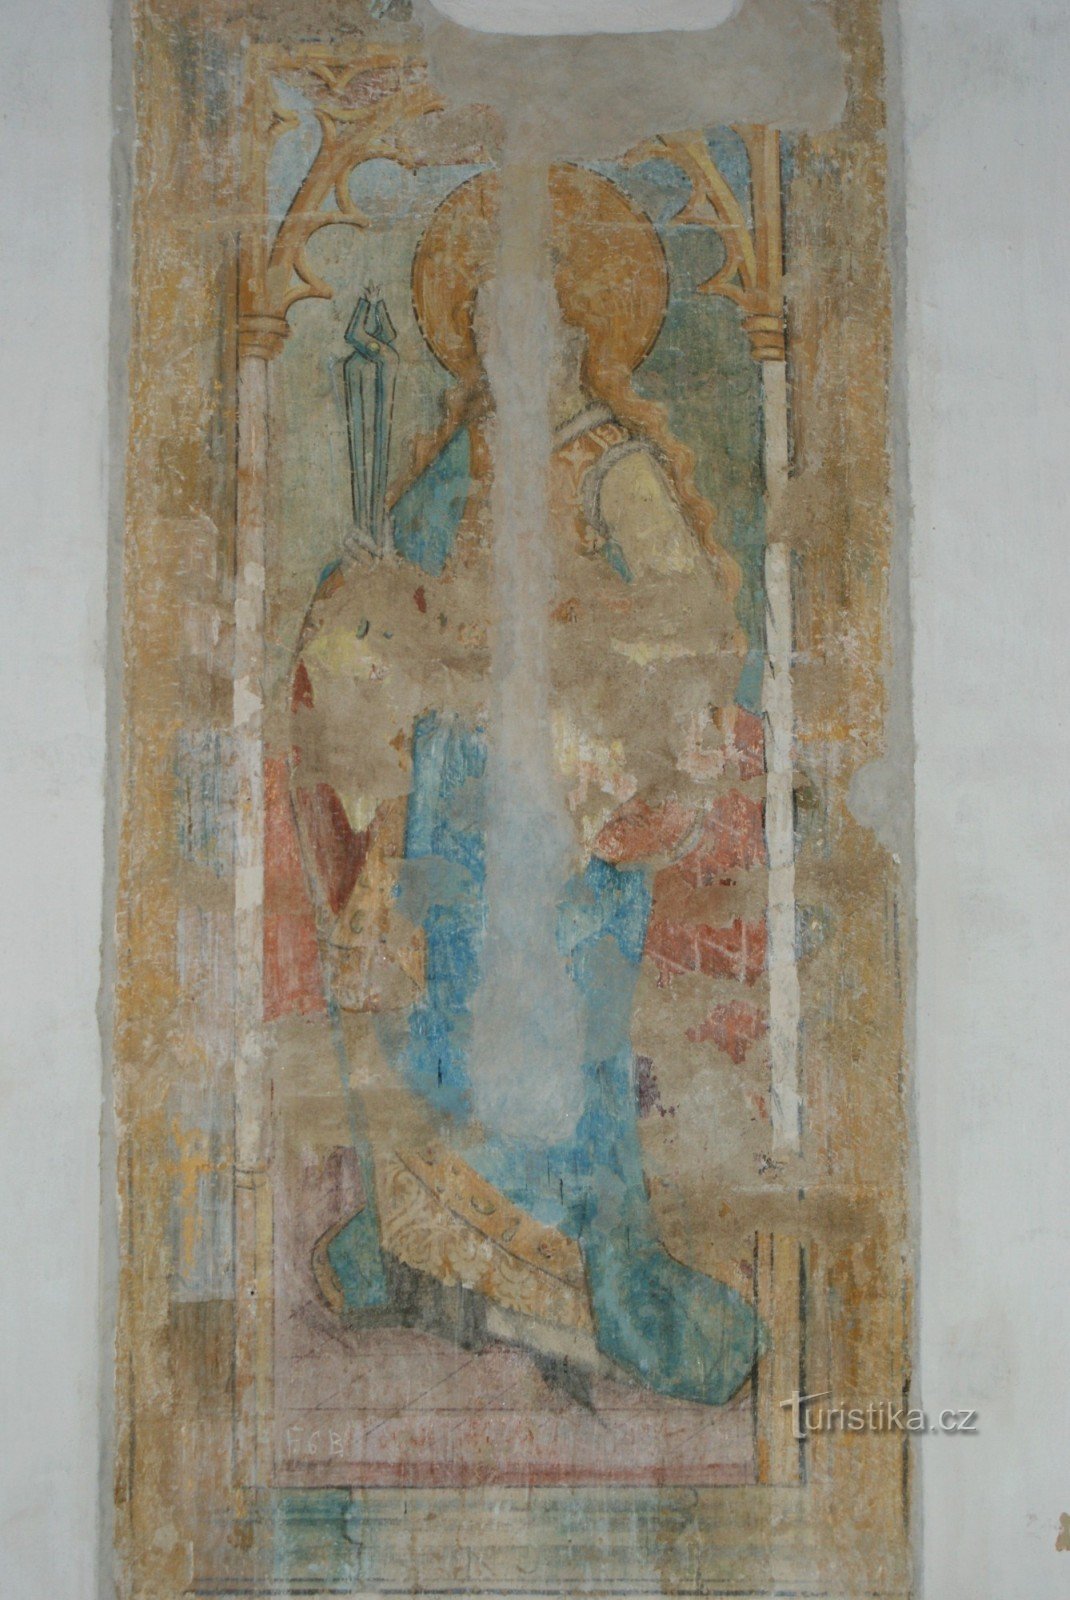 Picturi gotice din secolul al XIV-lea.